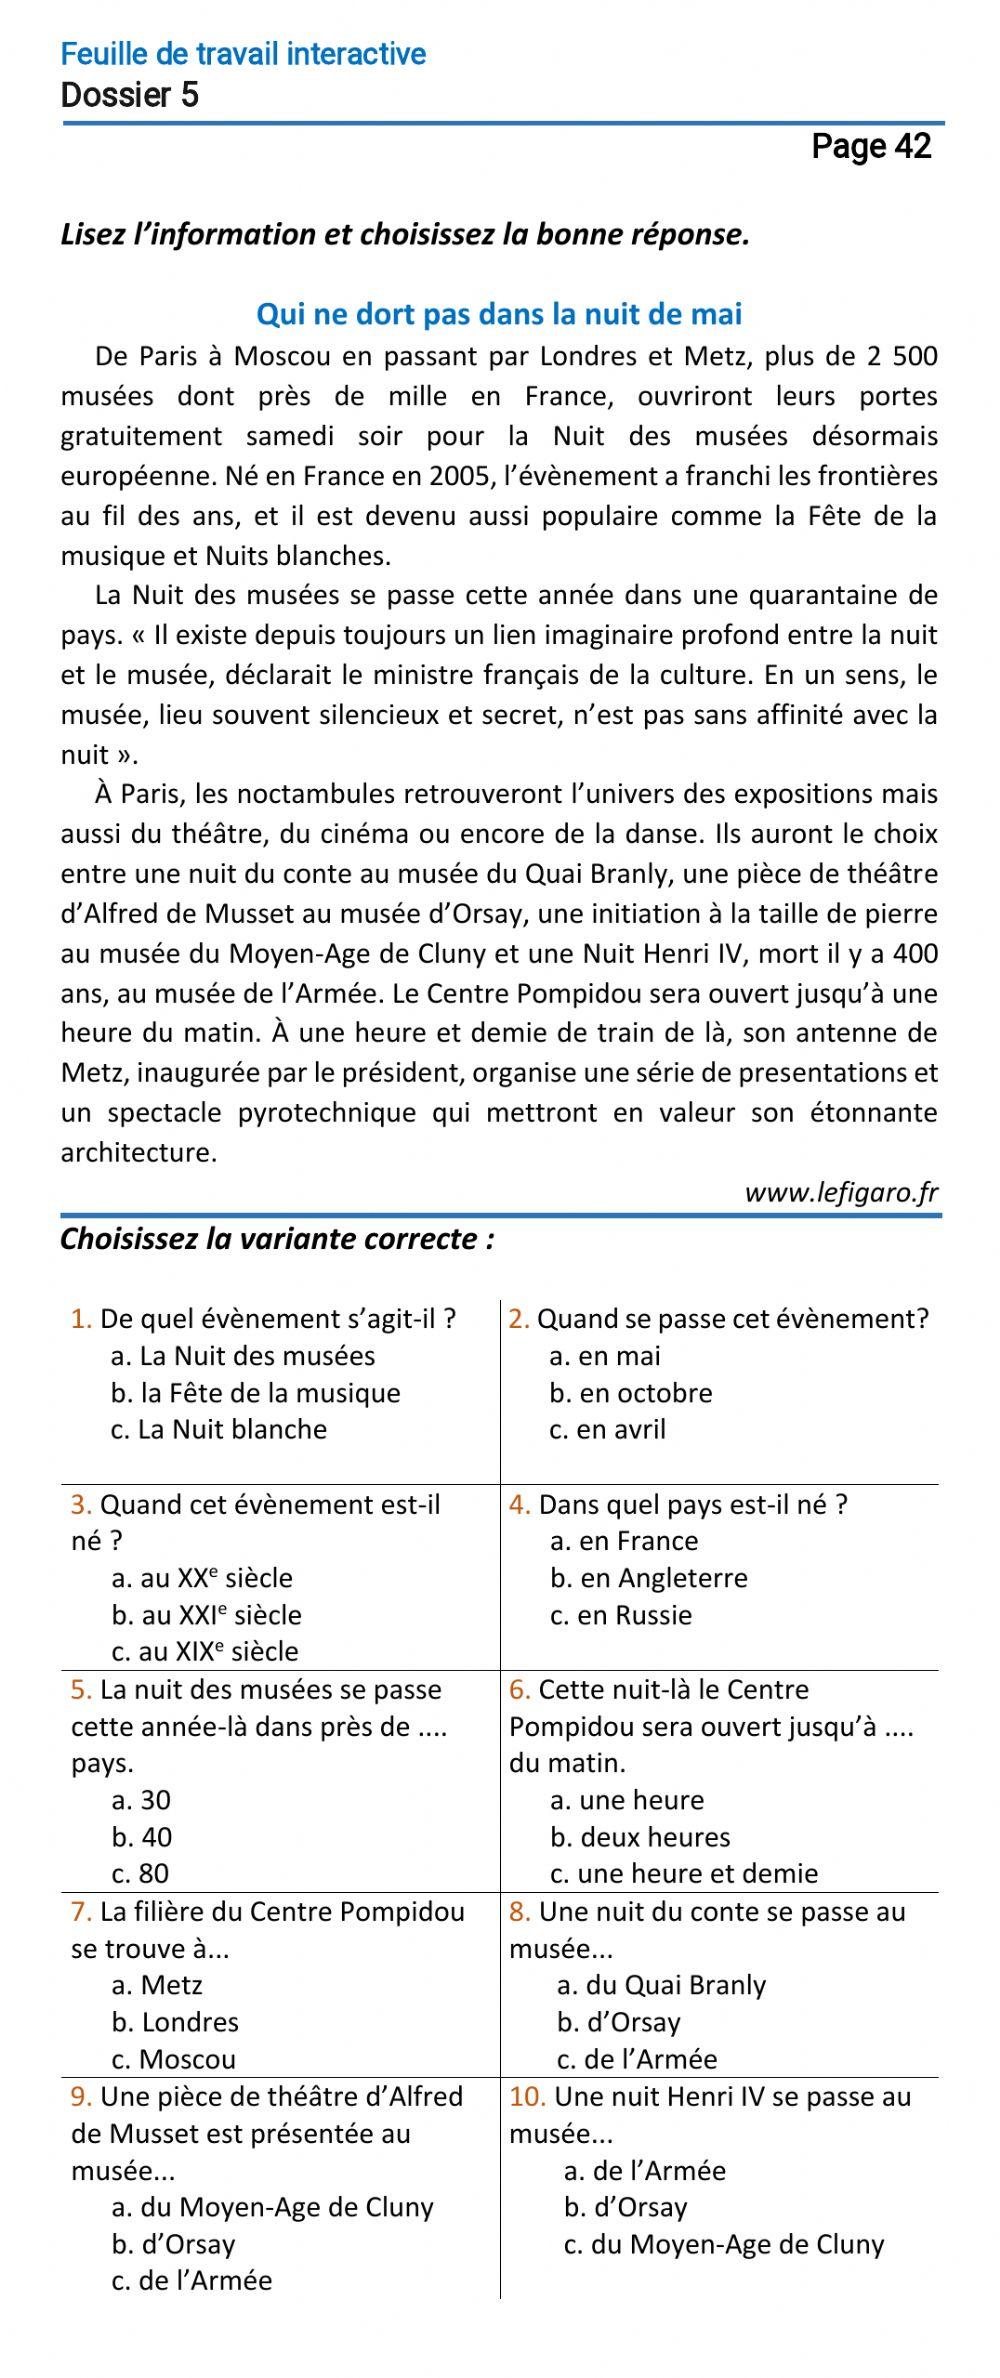 Le français-10 (повыш.)-Dossier 5-Page 42